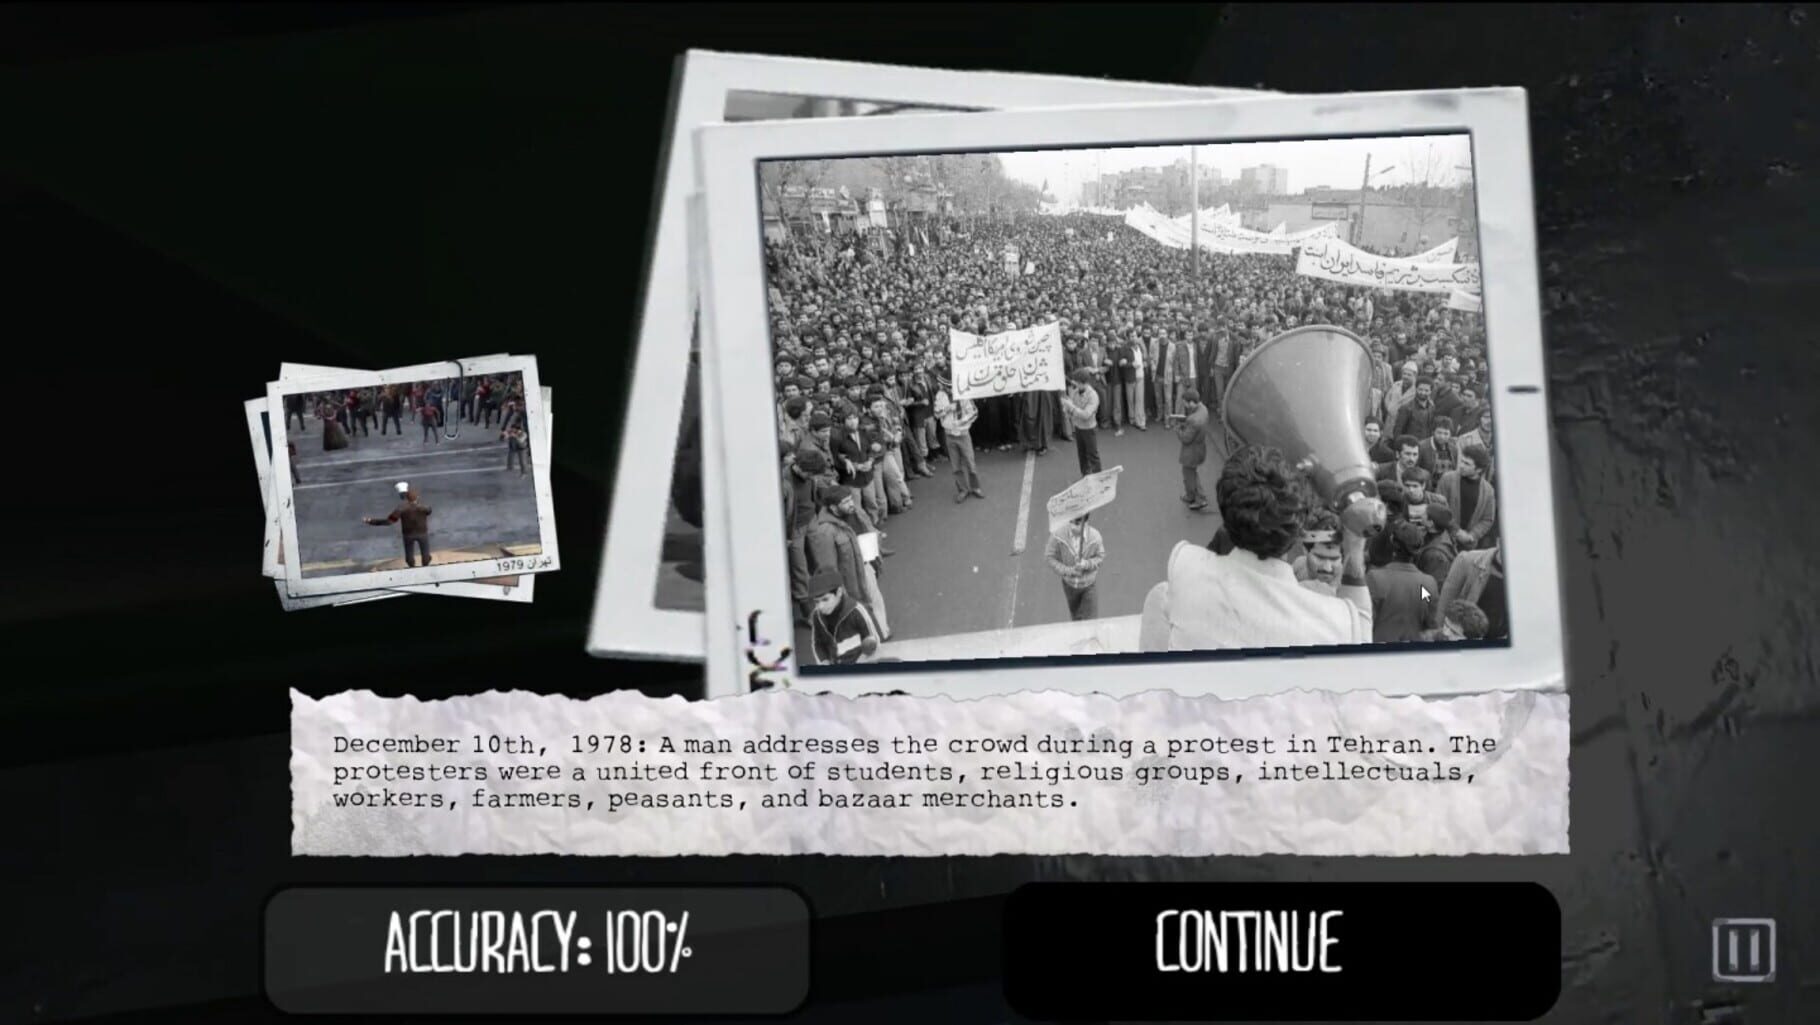 1979 Revolution: Black Friday screenshot